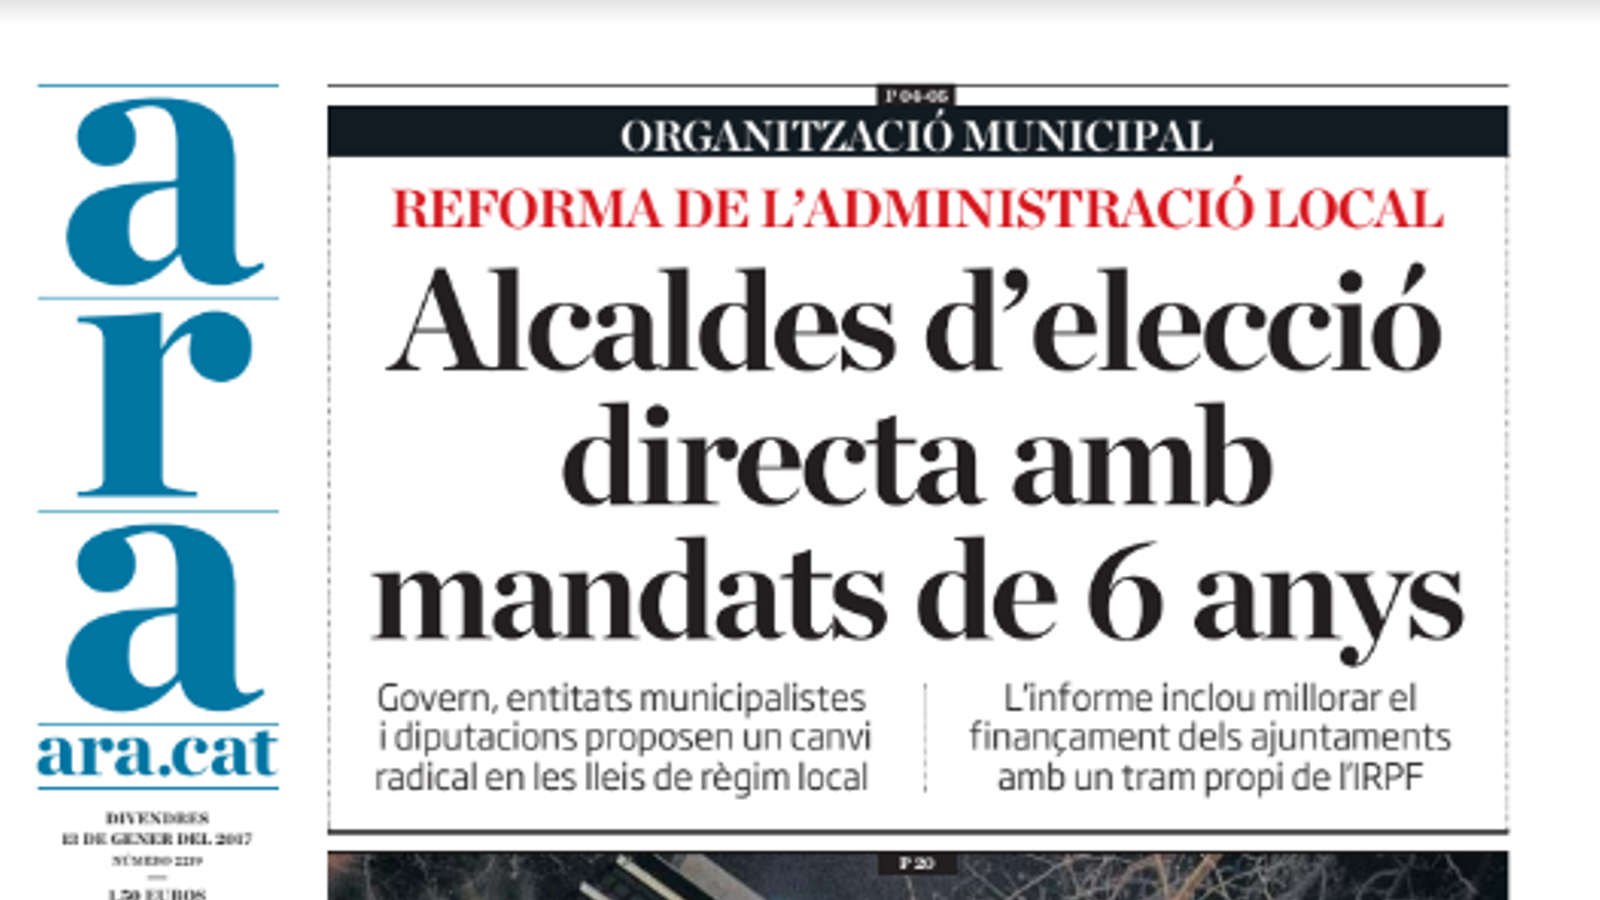 "Alcaldes d'elecció directa amb mandats de 6 anys", portada de l'ARA d'aquest divendres